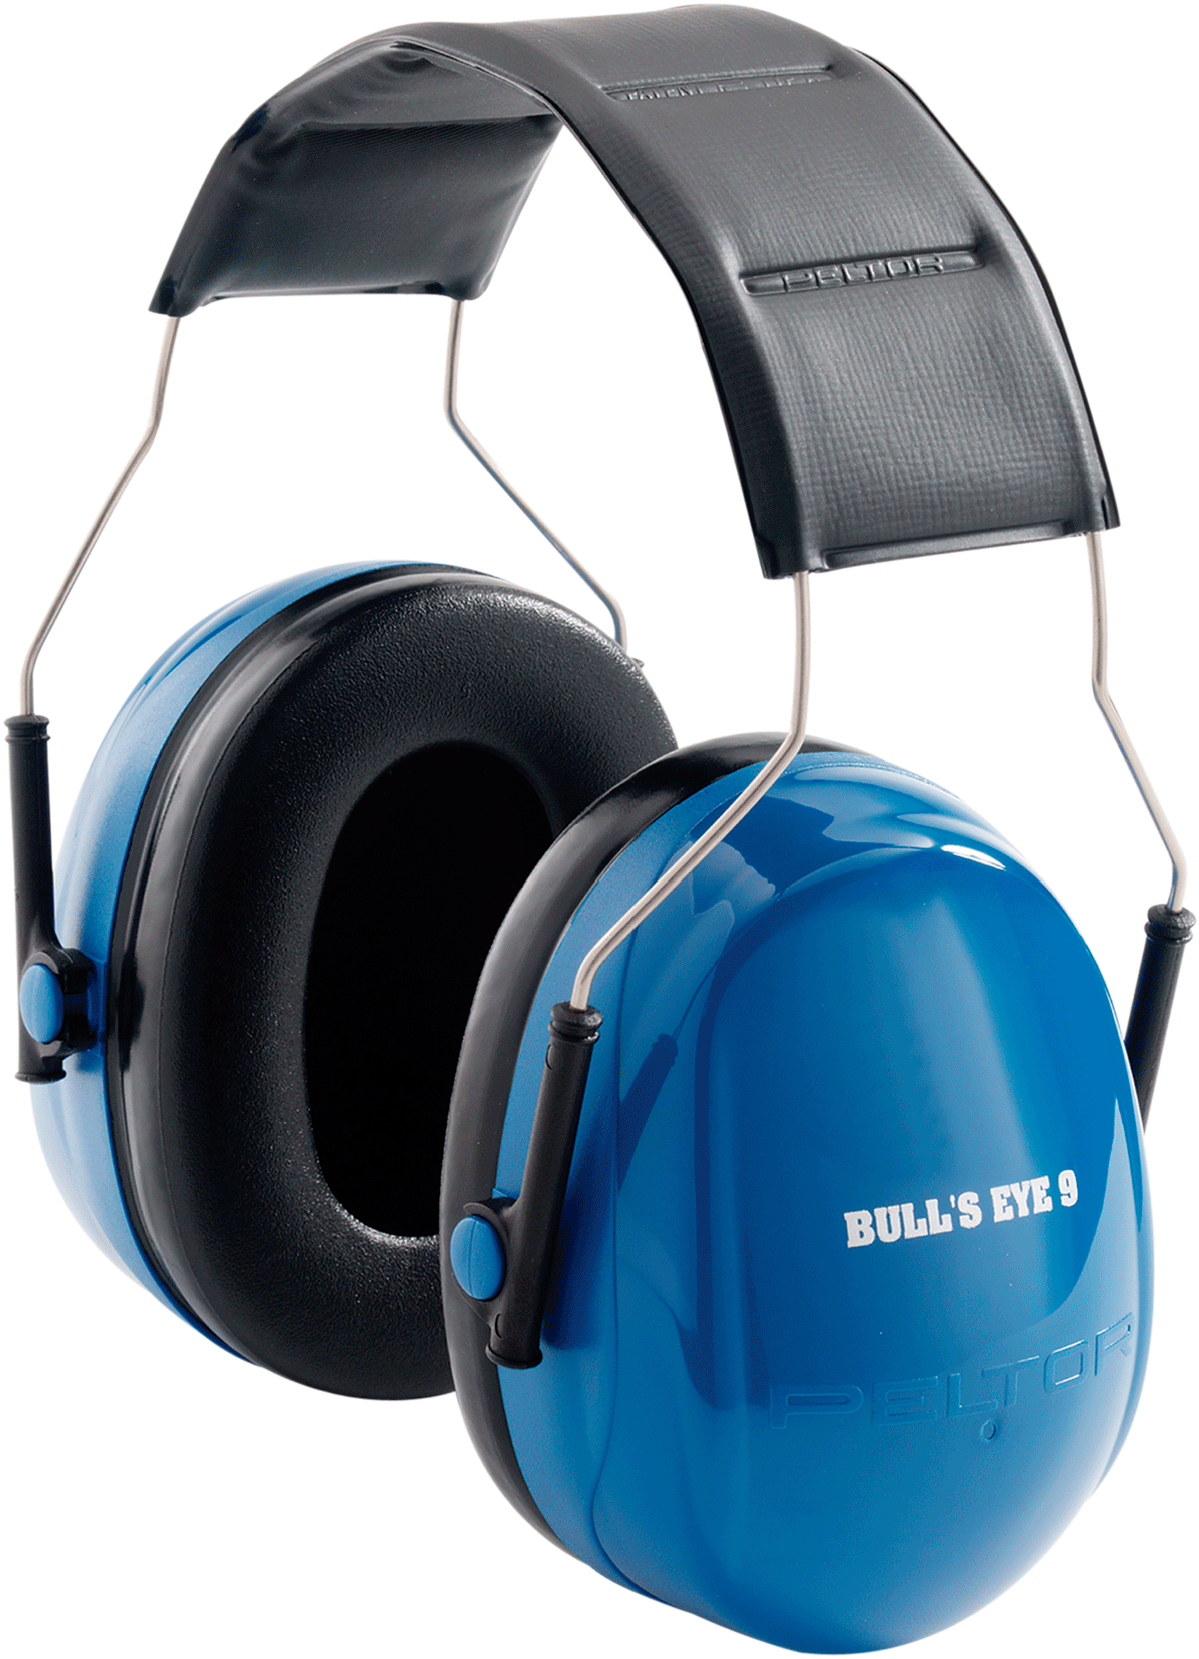 3m Peltor 97007 Bullseye Hearing Protection Nrr 25 - 3m Peltor Bulls Eye 7 Hearing Protector (1313x1800)